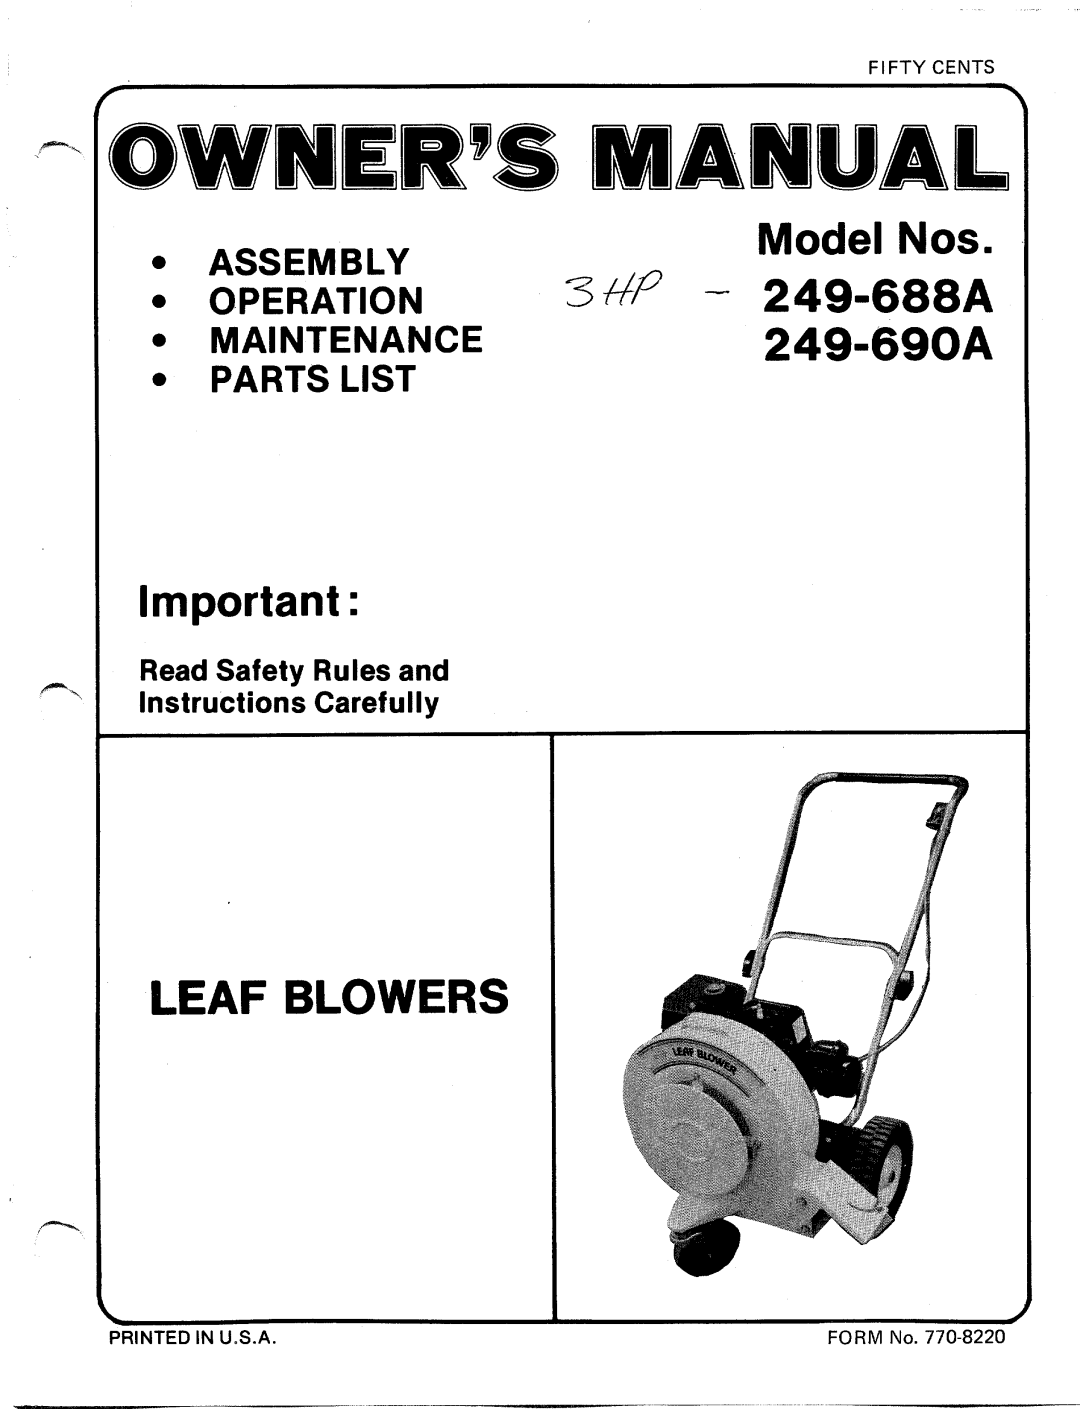 MTD 249-690A, 249-688A manual 